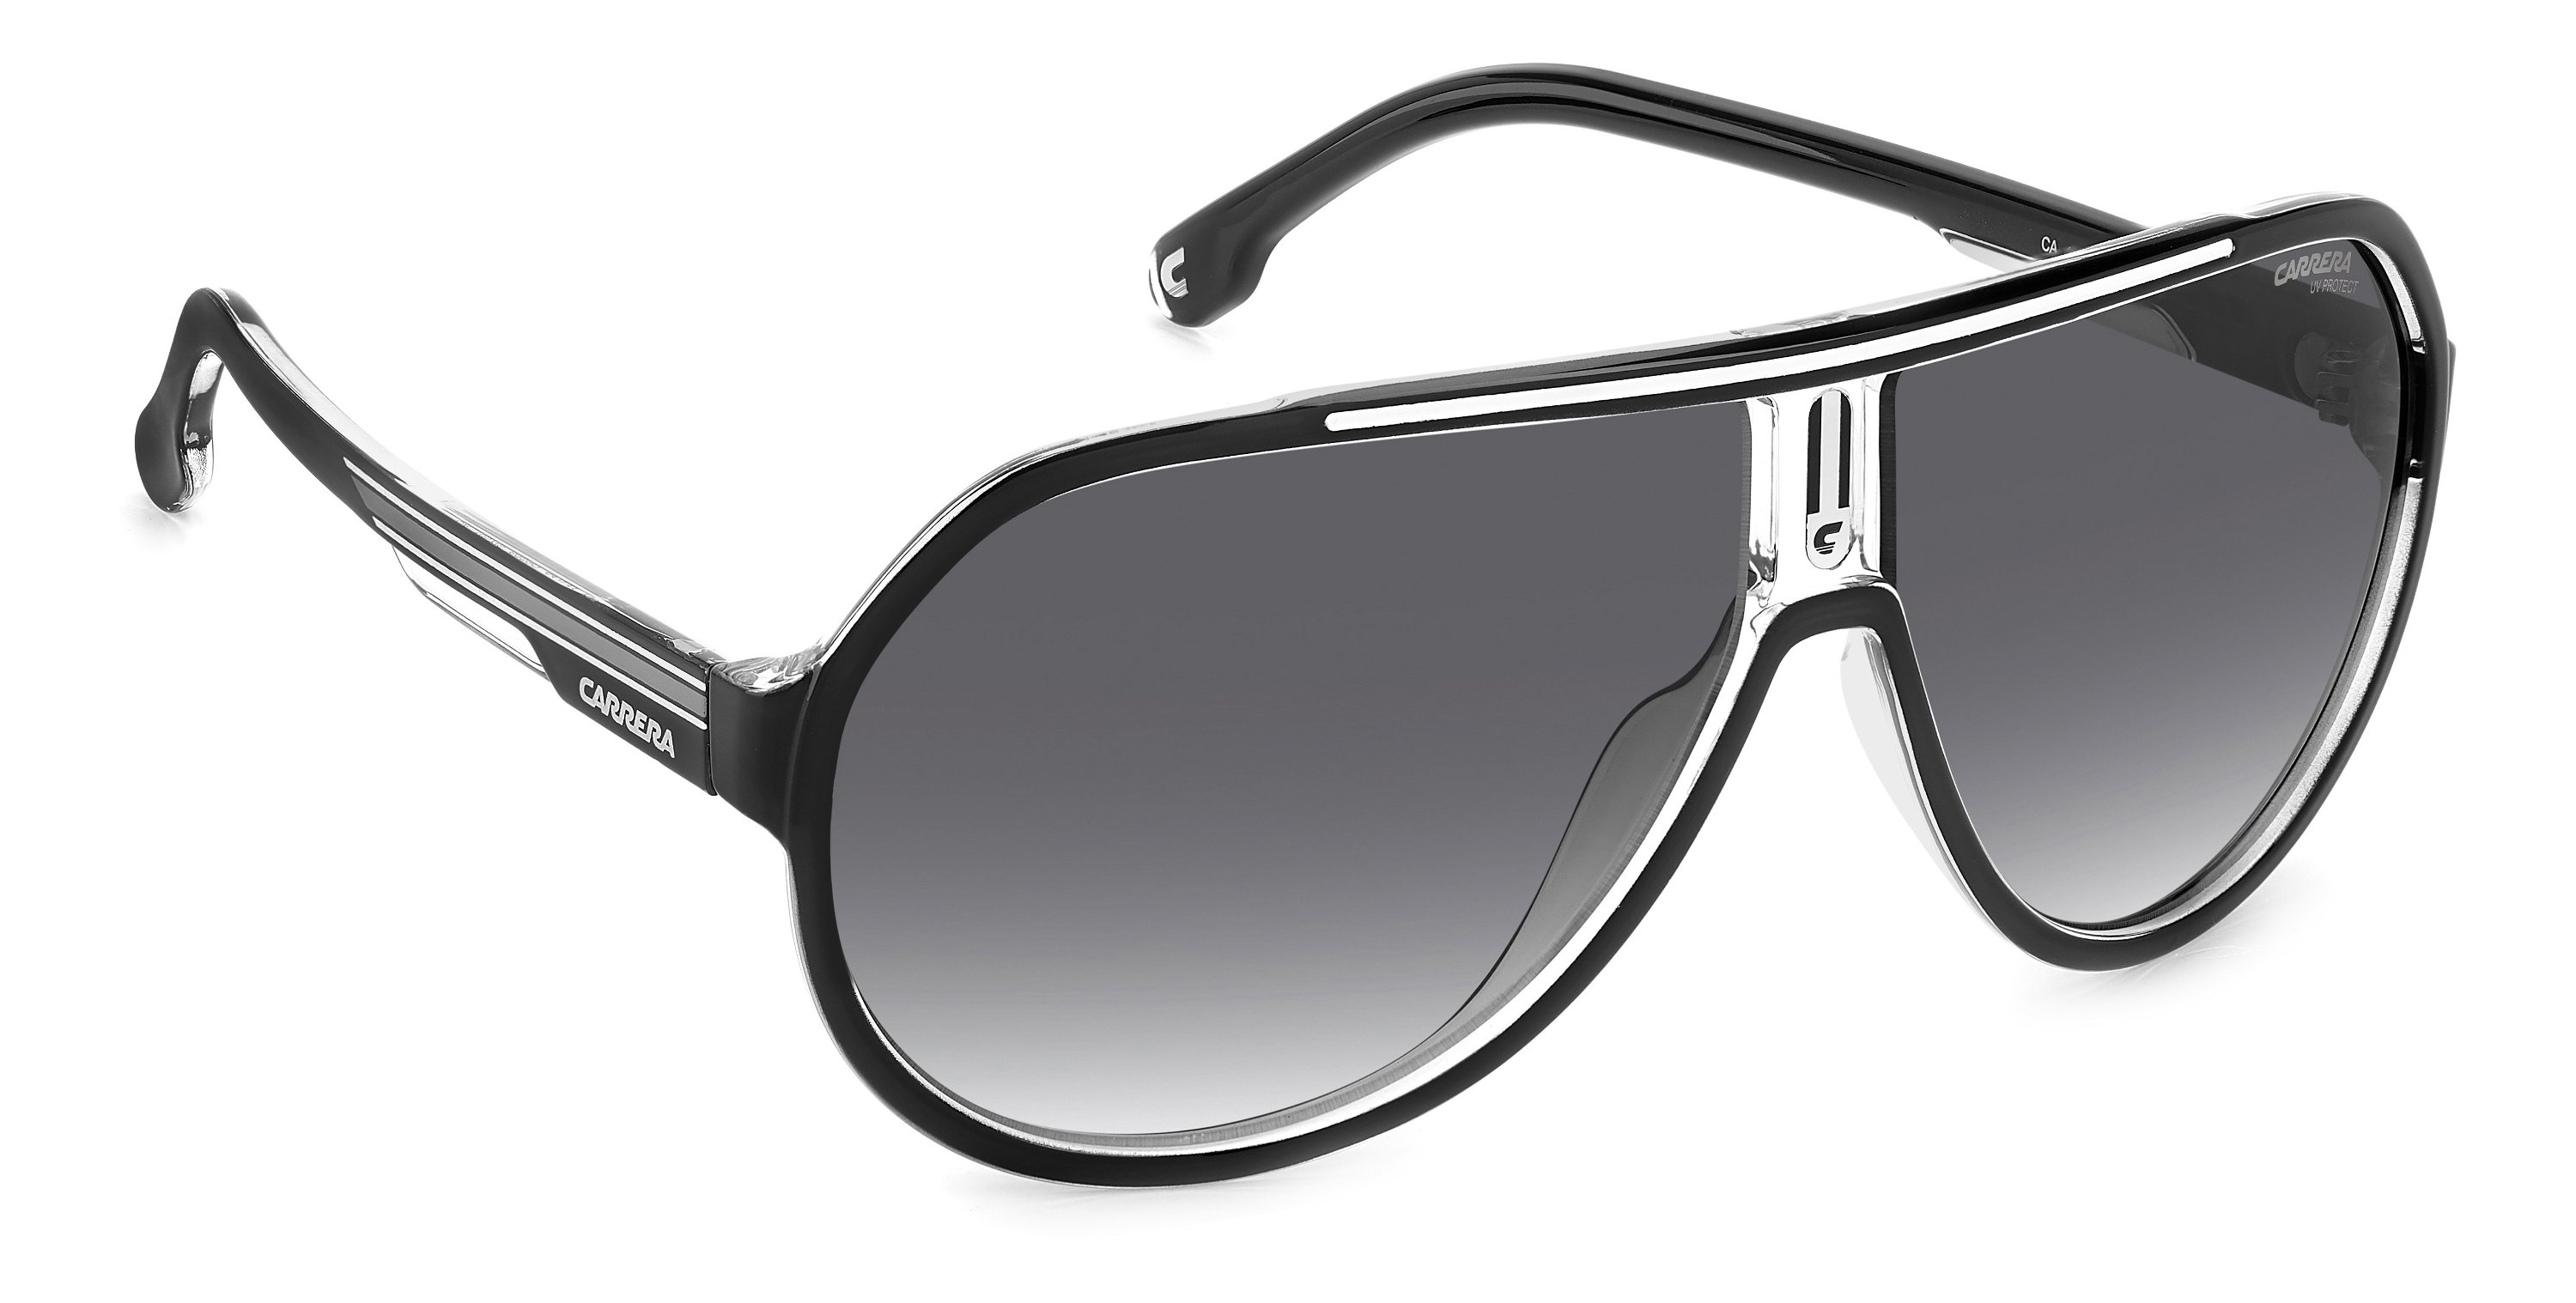 Carrera Sonnenbrille 1057/S 80S schwarz weiß